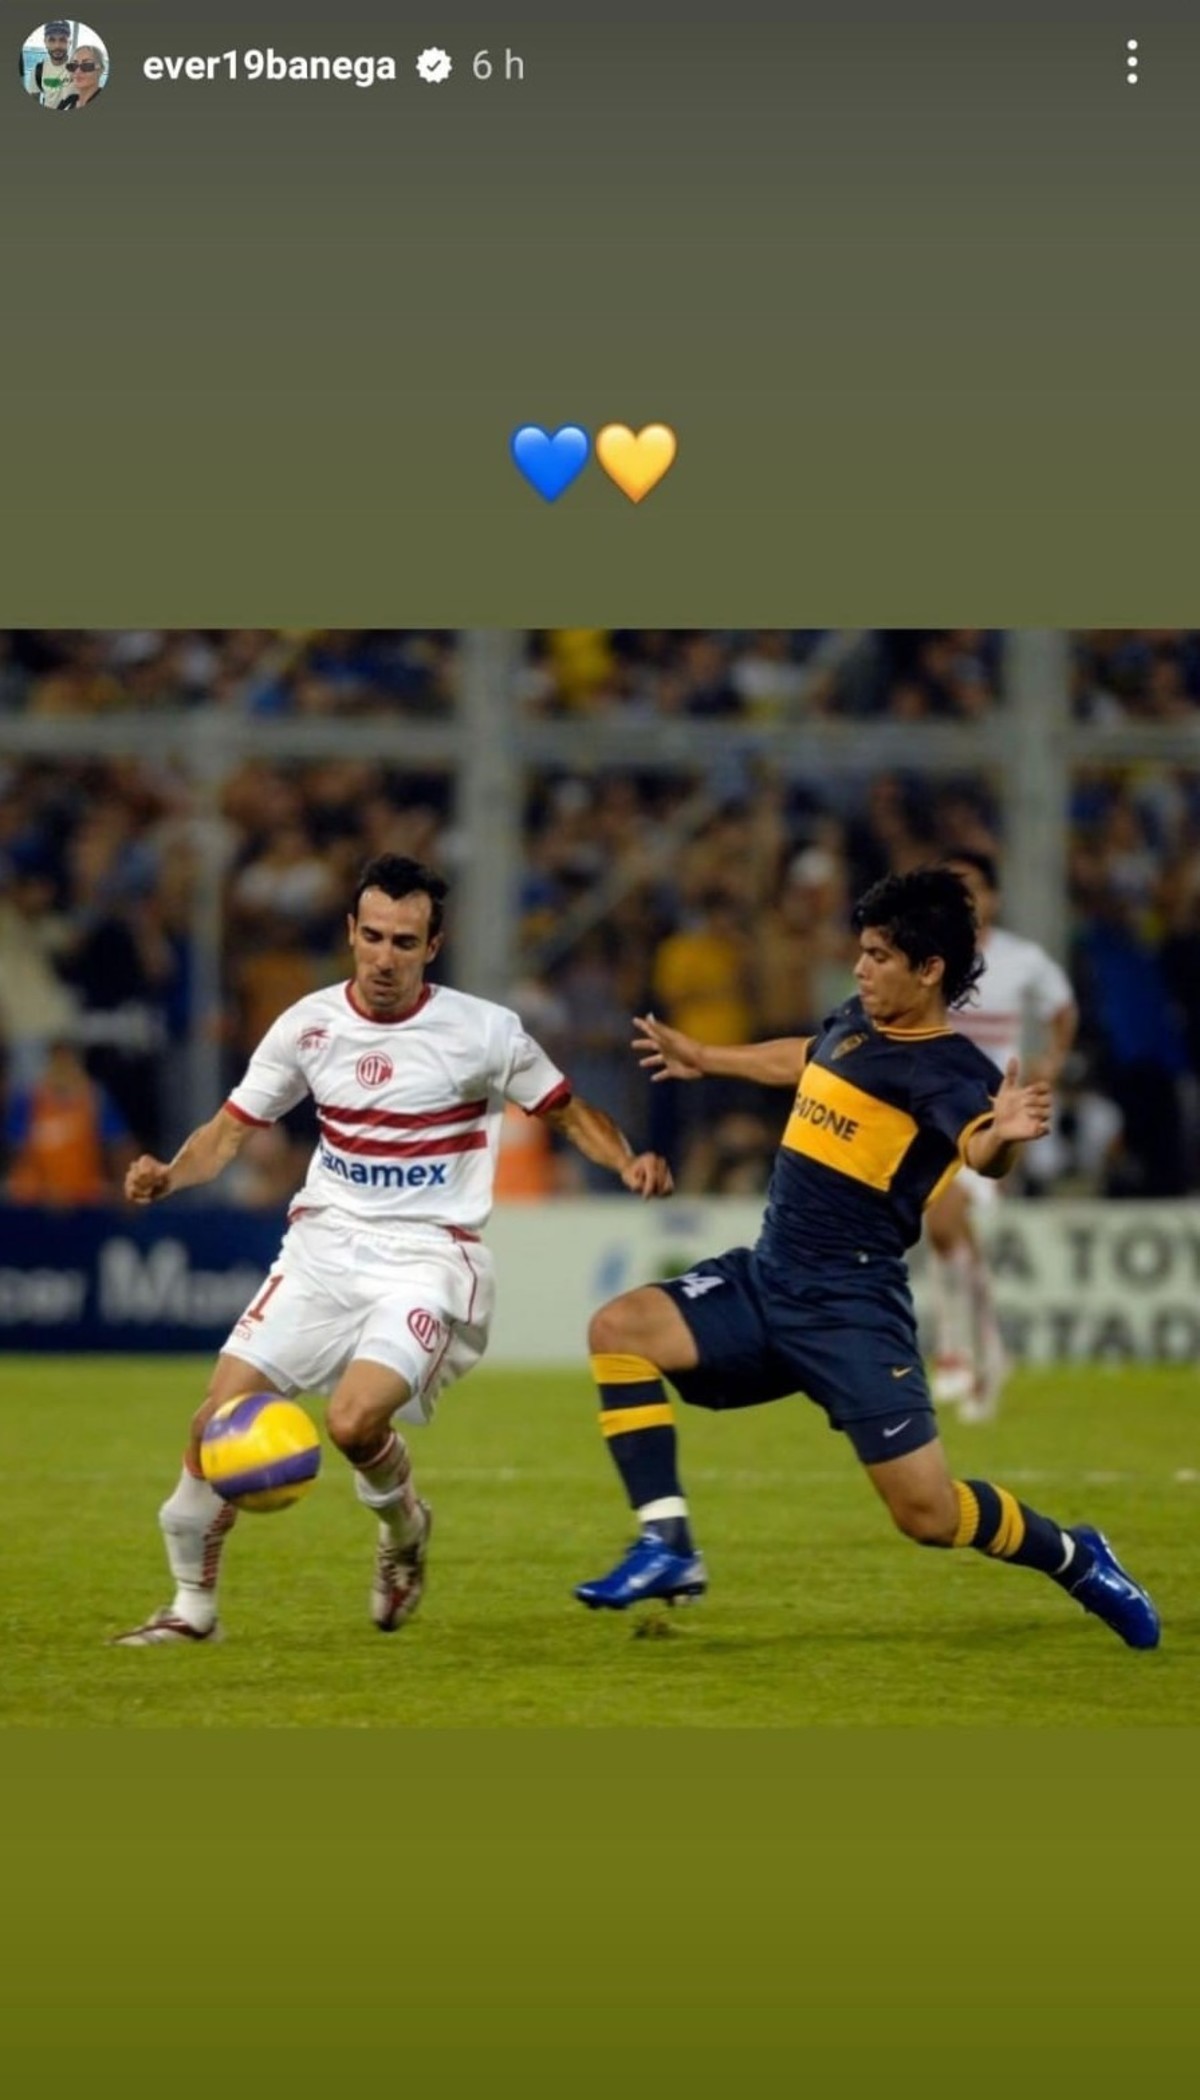 Captura de la historia que subi Banega en Instagram de una foto suya jugando en Boca, con corazones azules y amarillos